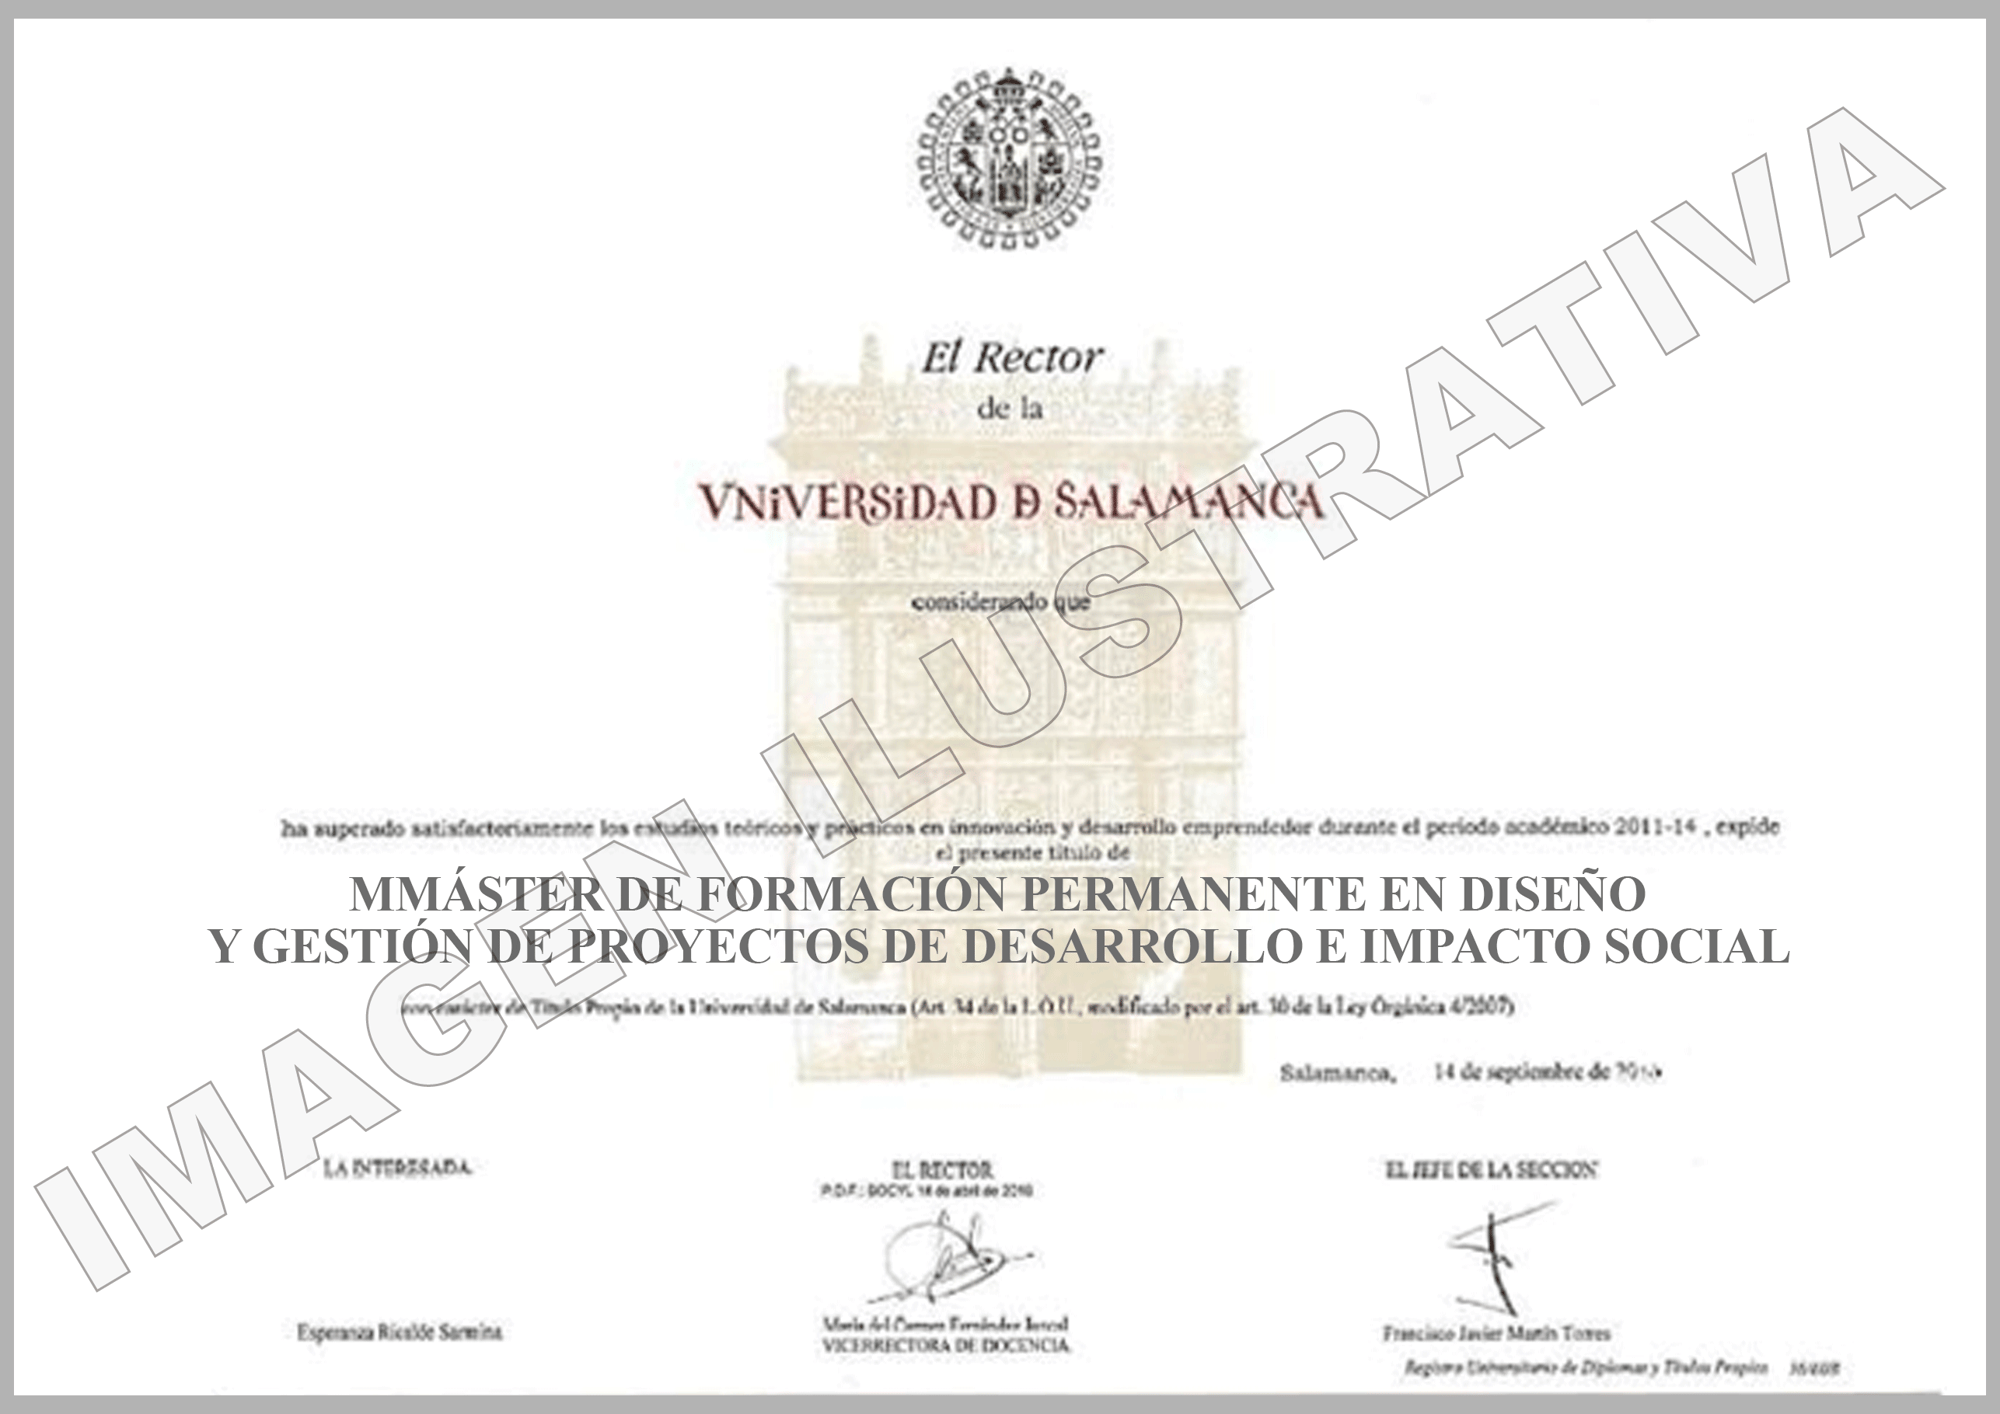 MGPDIS-Diploma-1